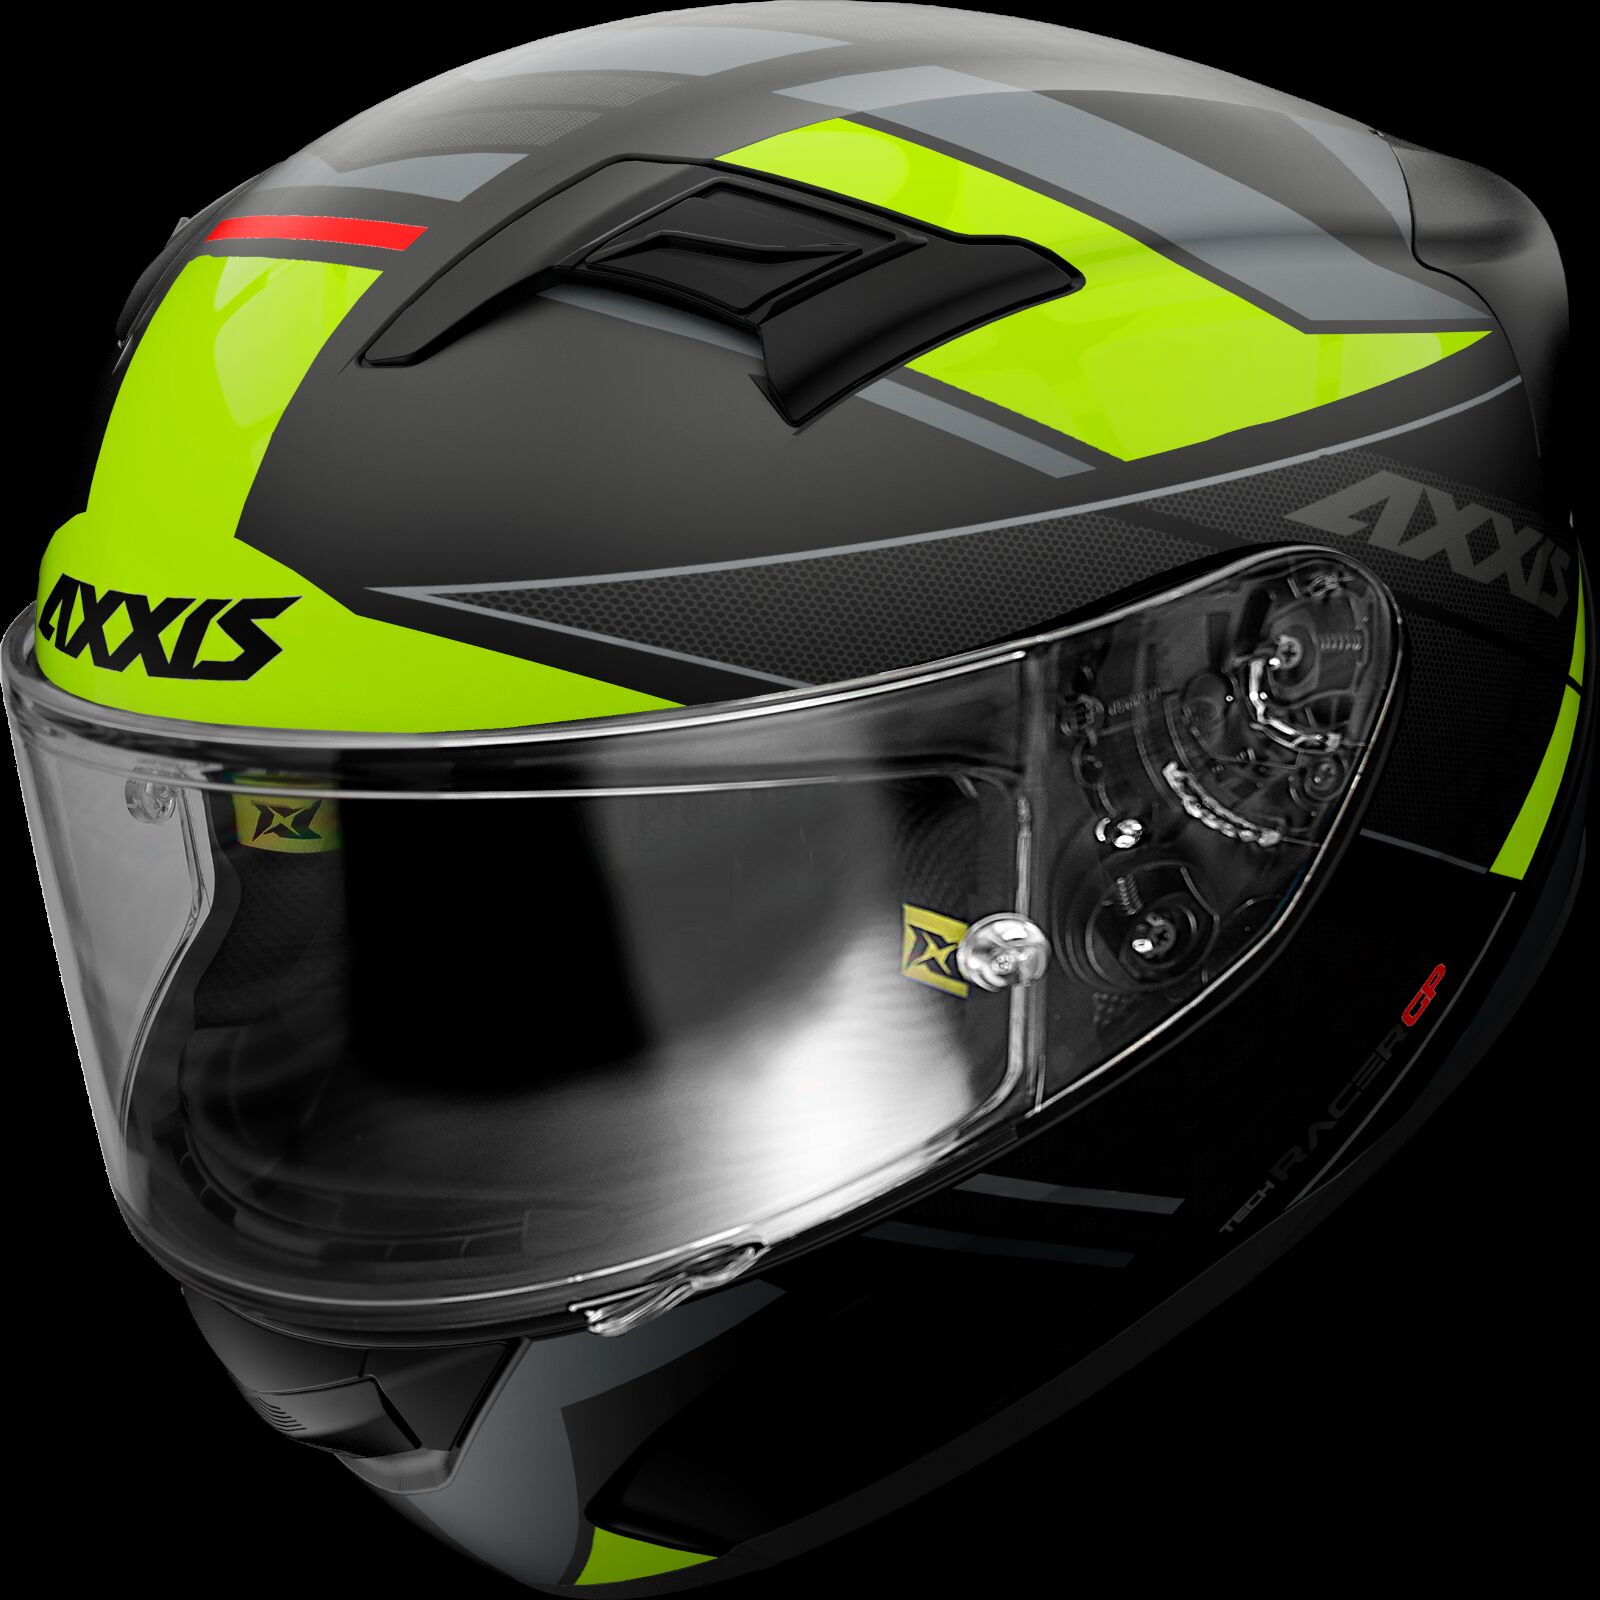 Obrázek produktu Integrální helma AXXIS GP RACER SV FIBER TECH matná fluo žlutá L 41048971356